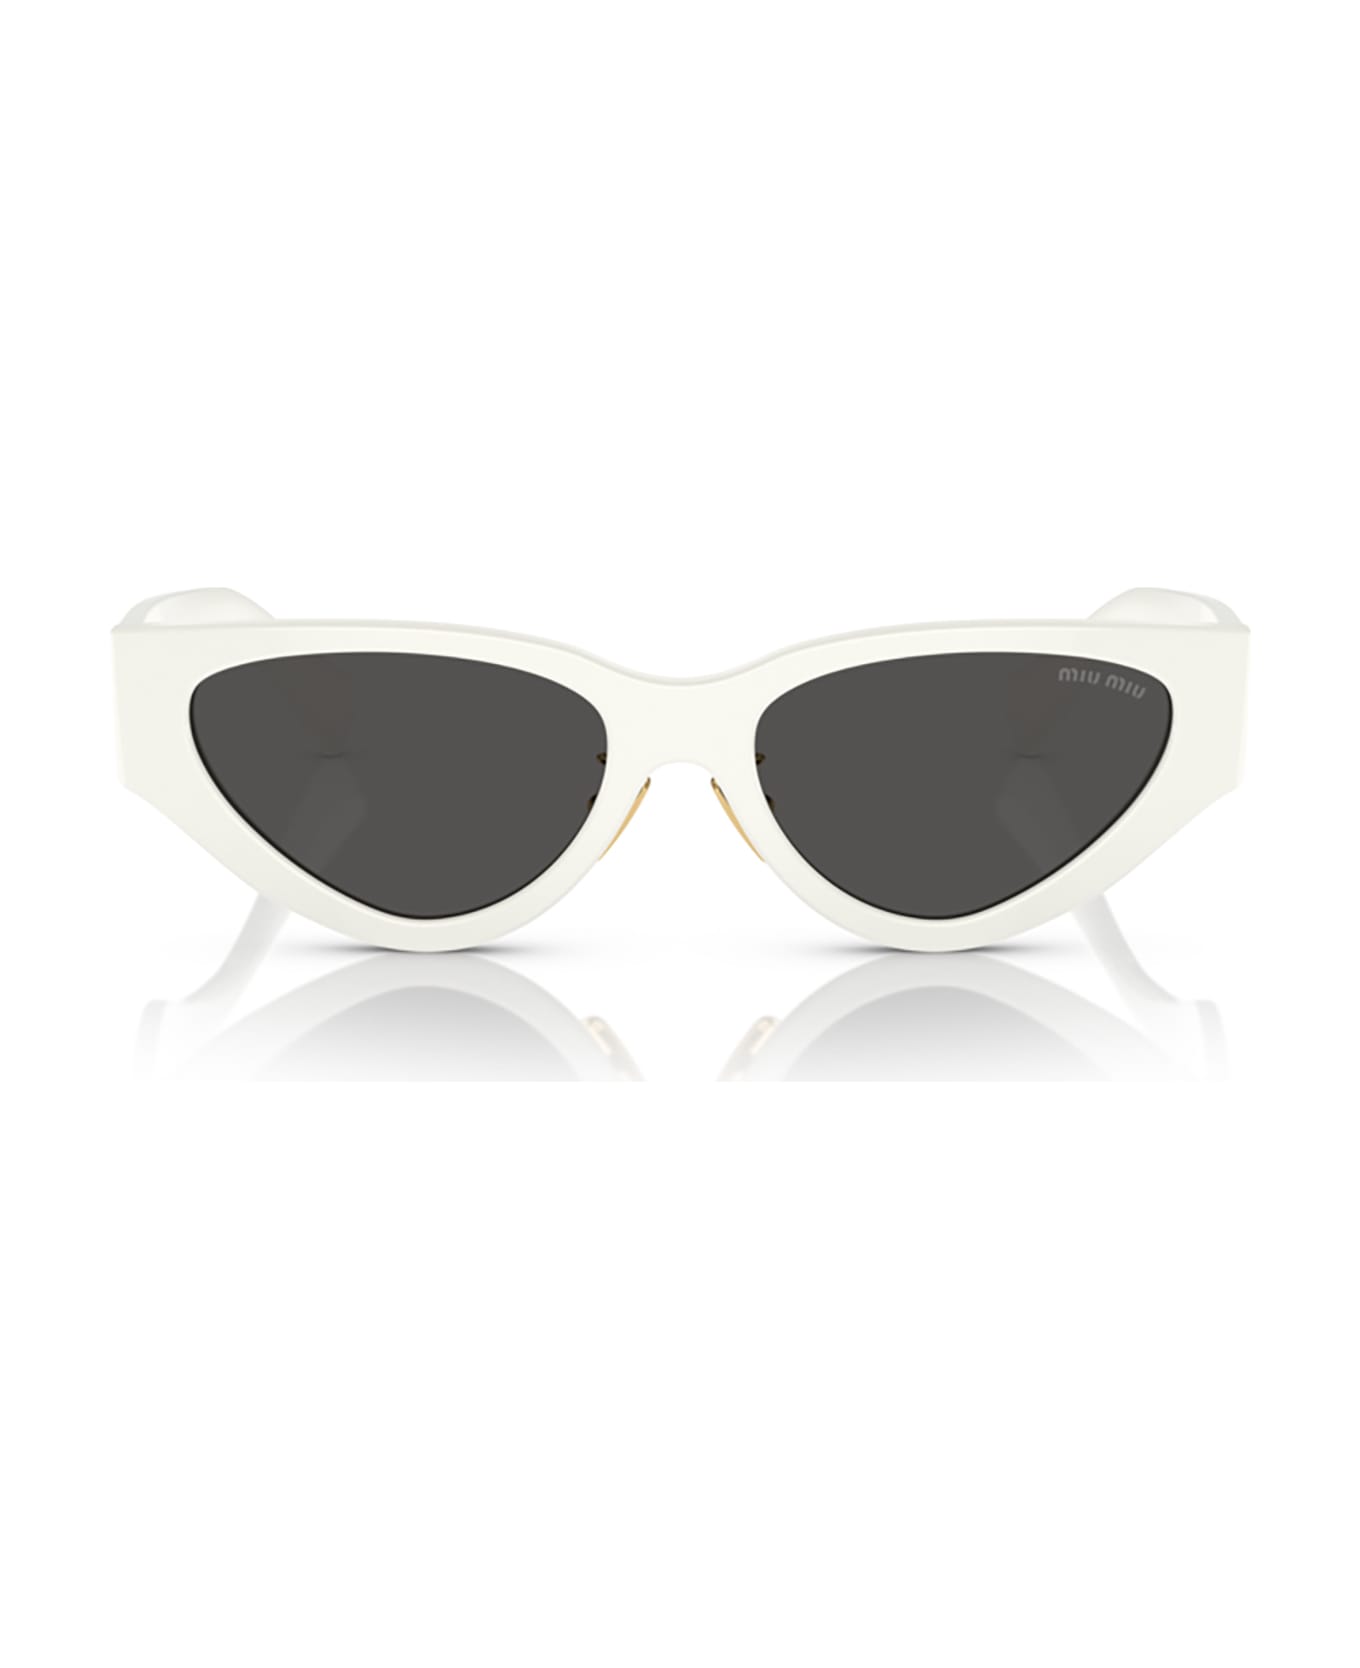 Miu Miu Eyewear Mu 03zs White Sunglasses - White サングラス